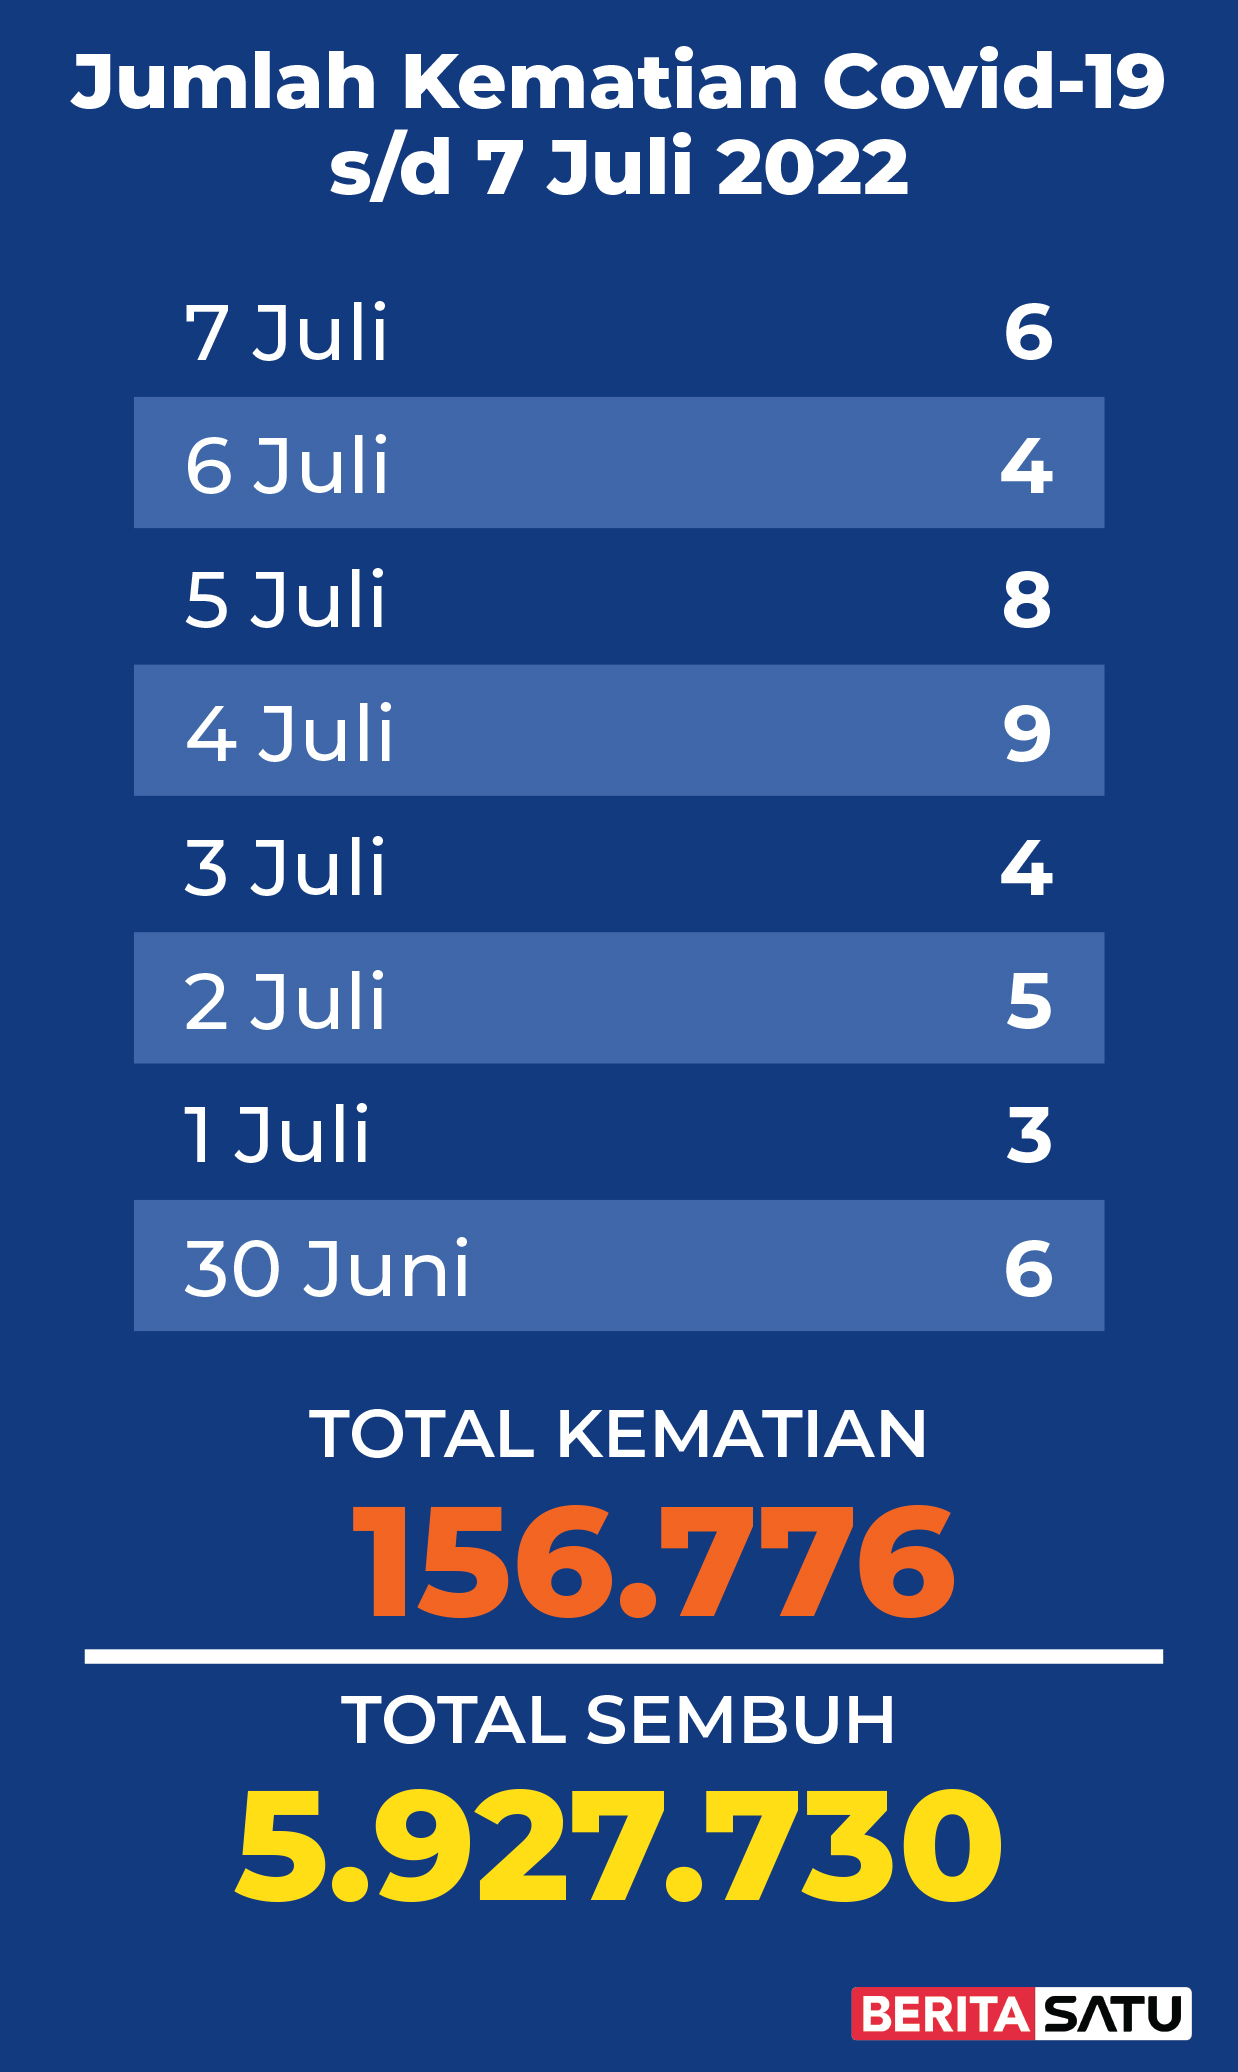 Data Kematian Covid-19 di Indonesia sampai 7 Juli 2022